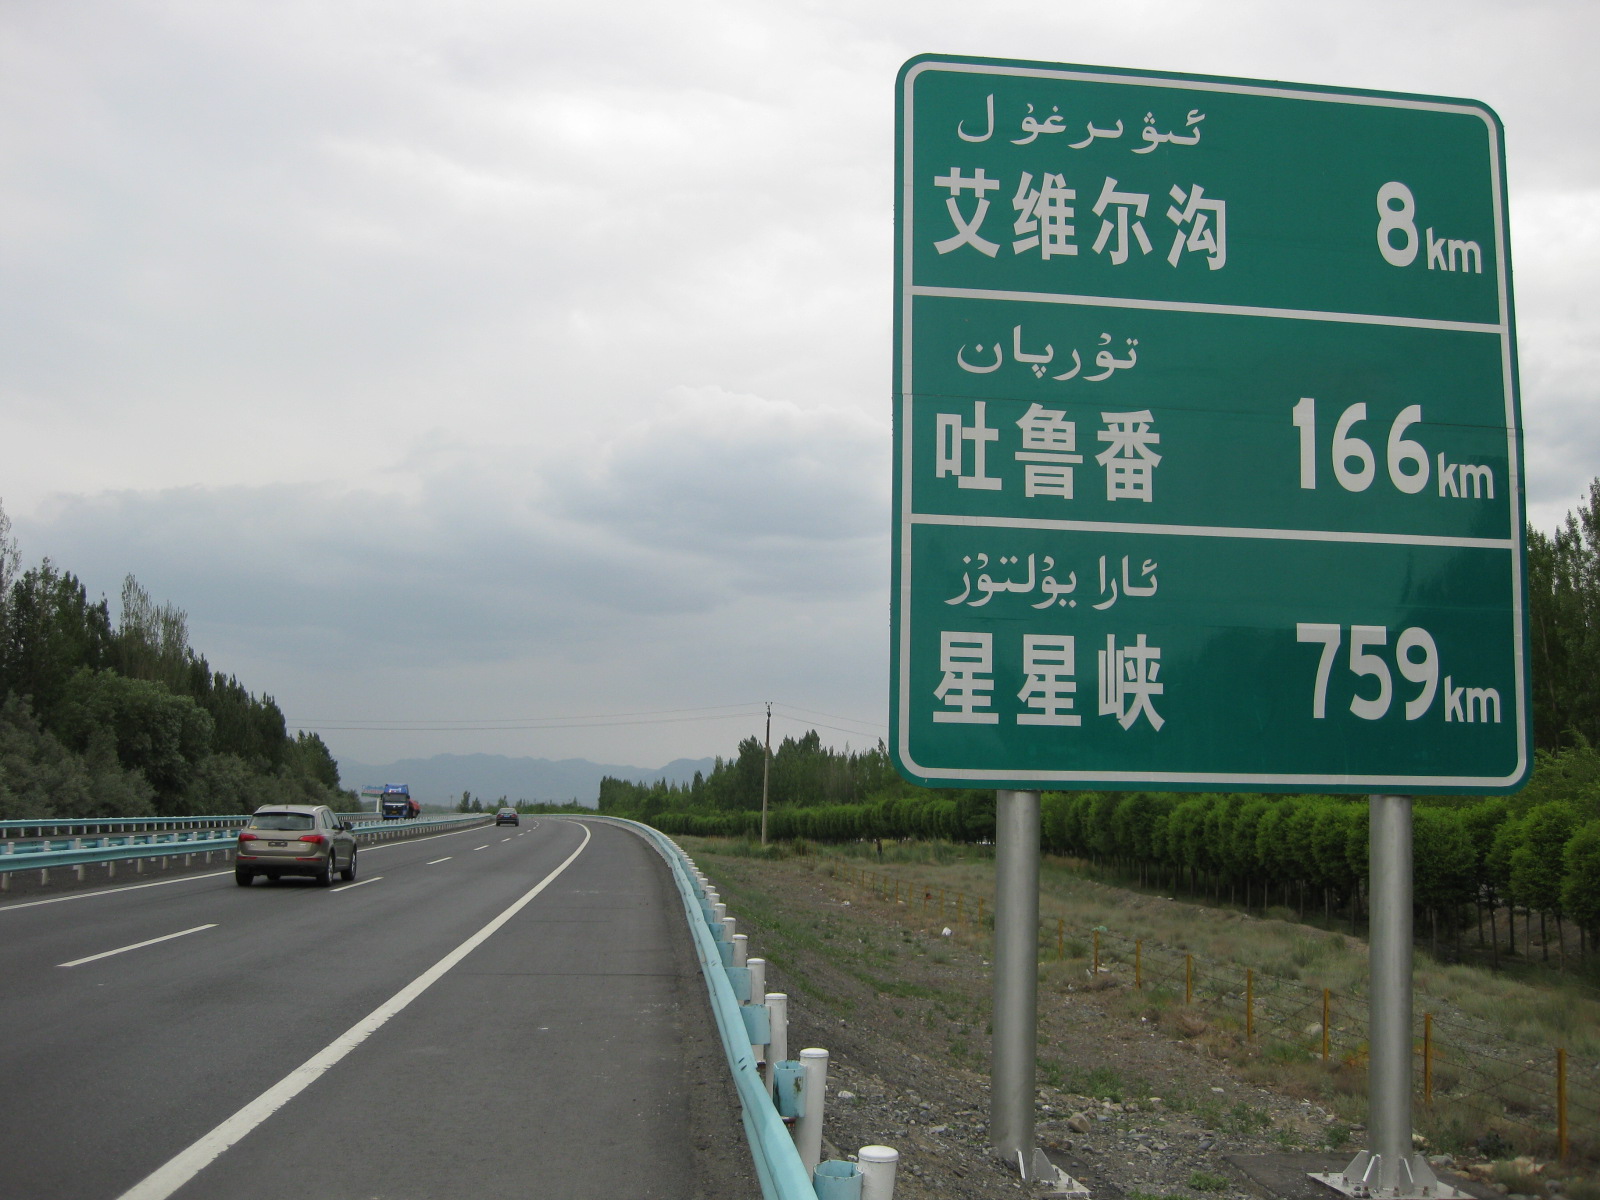 Китайские дорожные указатели